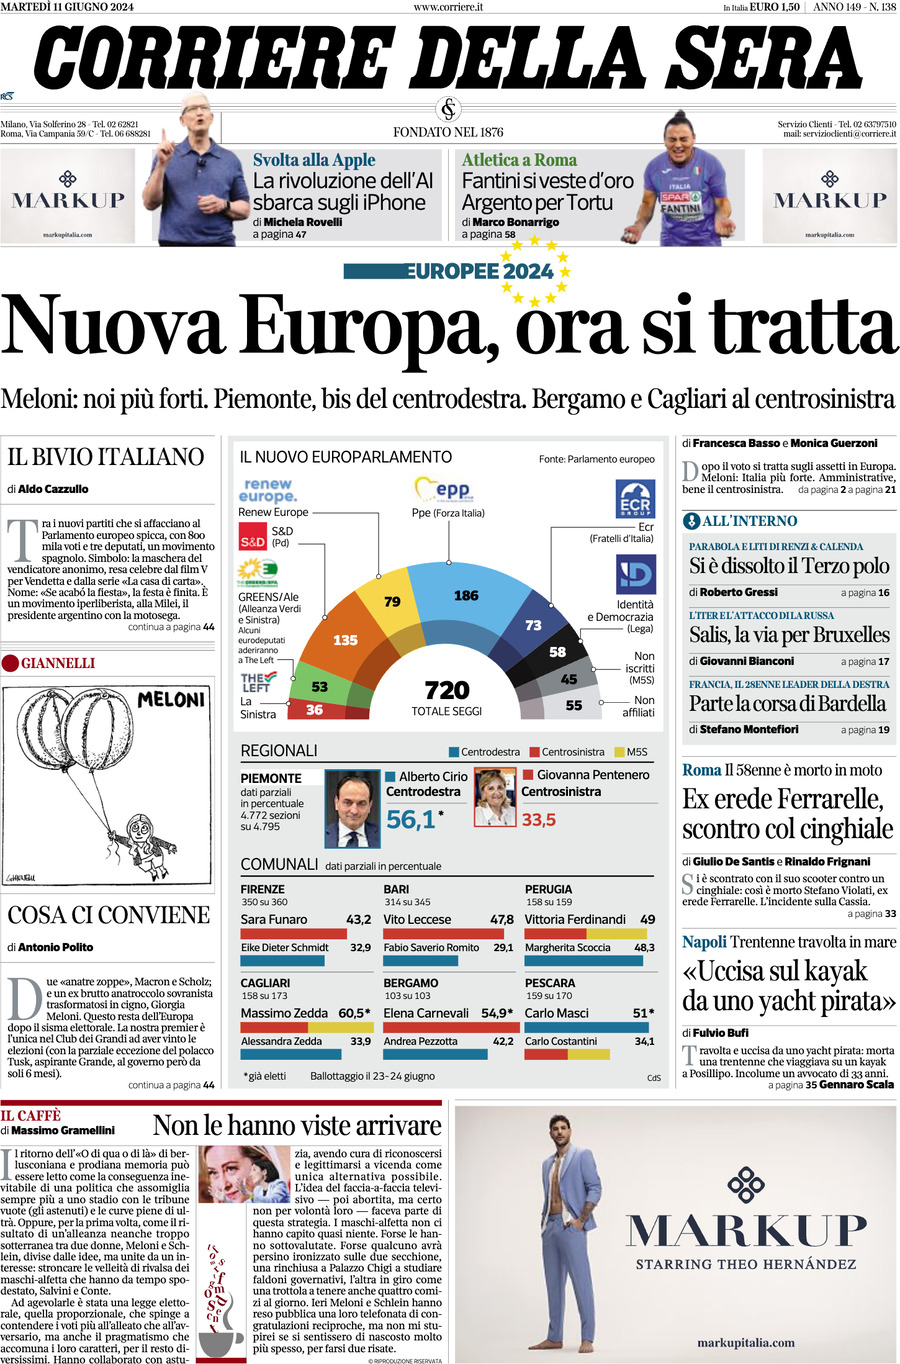 Prima-pagina-del-corriere-della-sera-edizione-di-oggi-11-06-2024